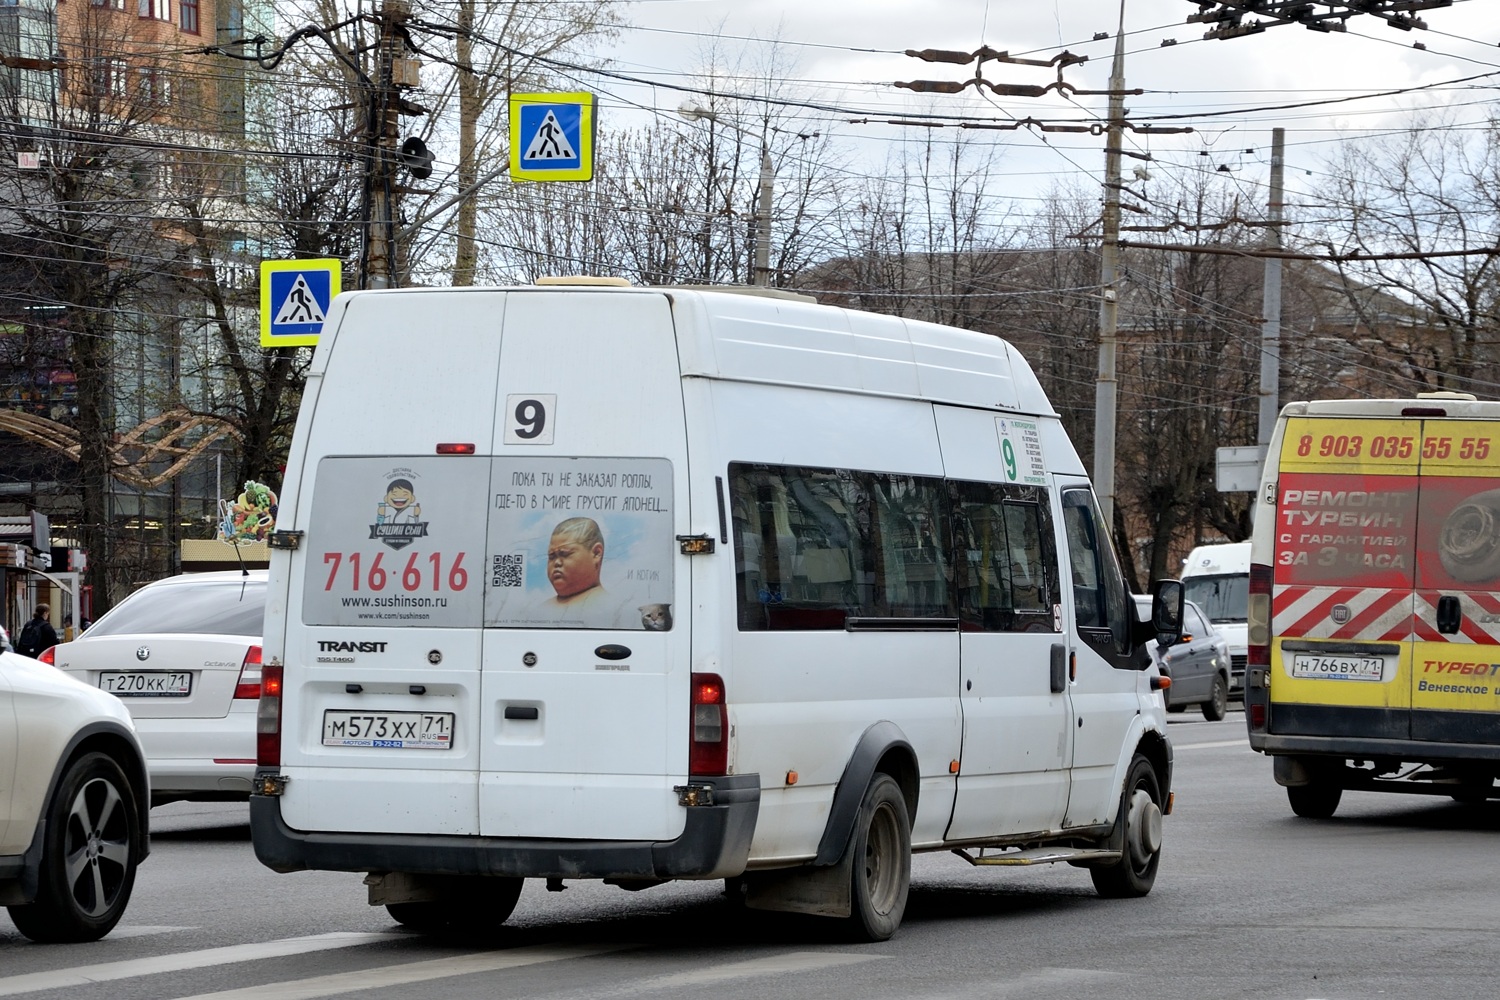 Tula, Nizhegorodets-222702 (Ford Transit) # М 573 ХХ 71